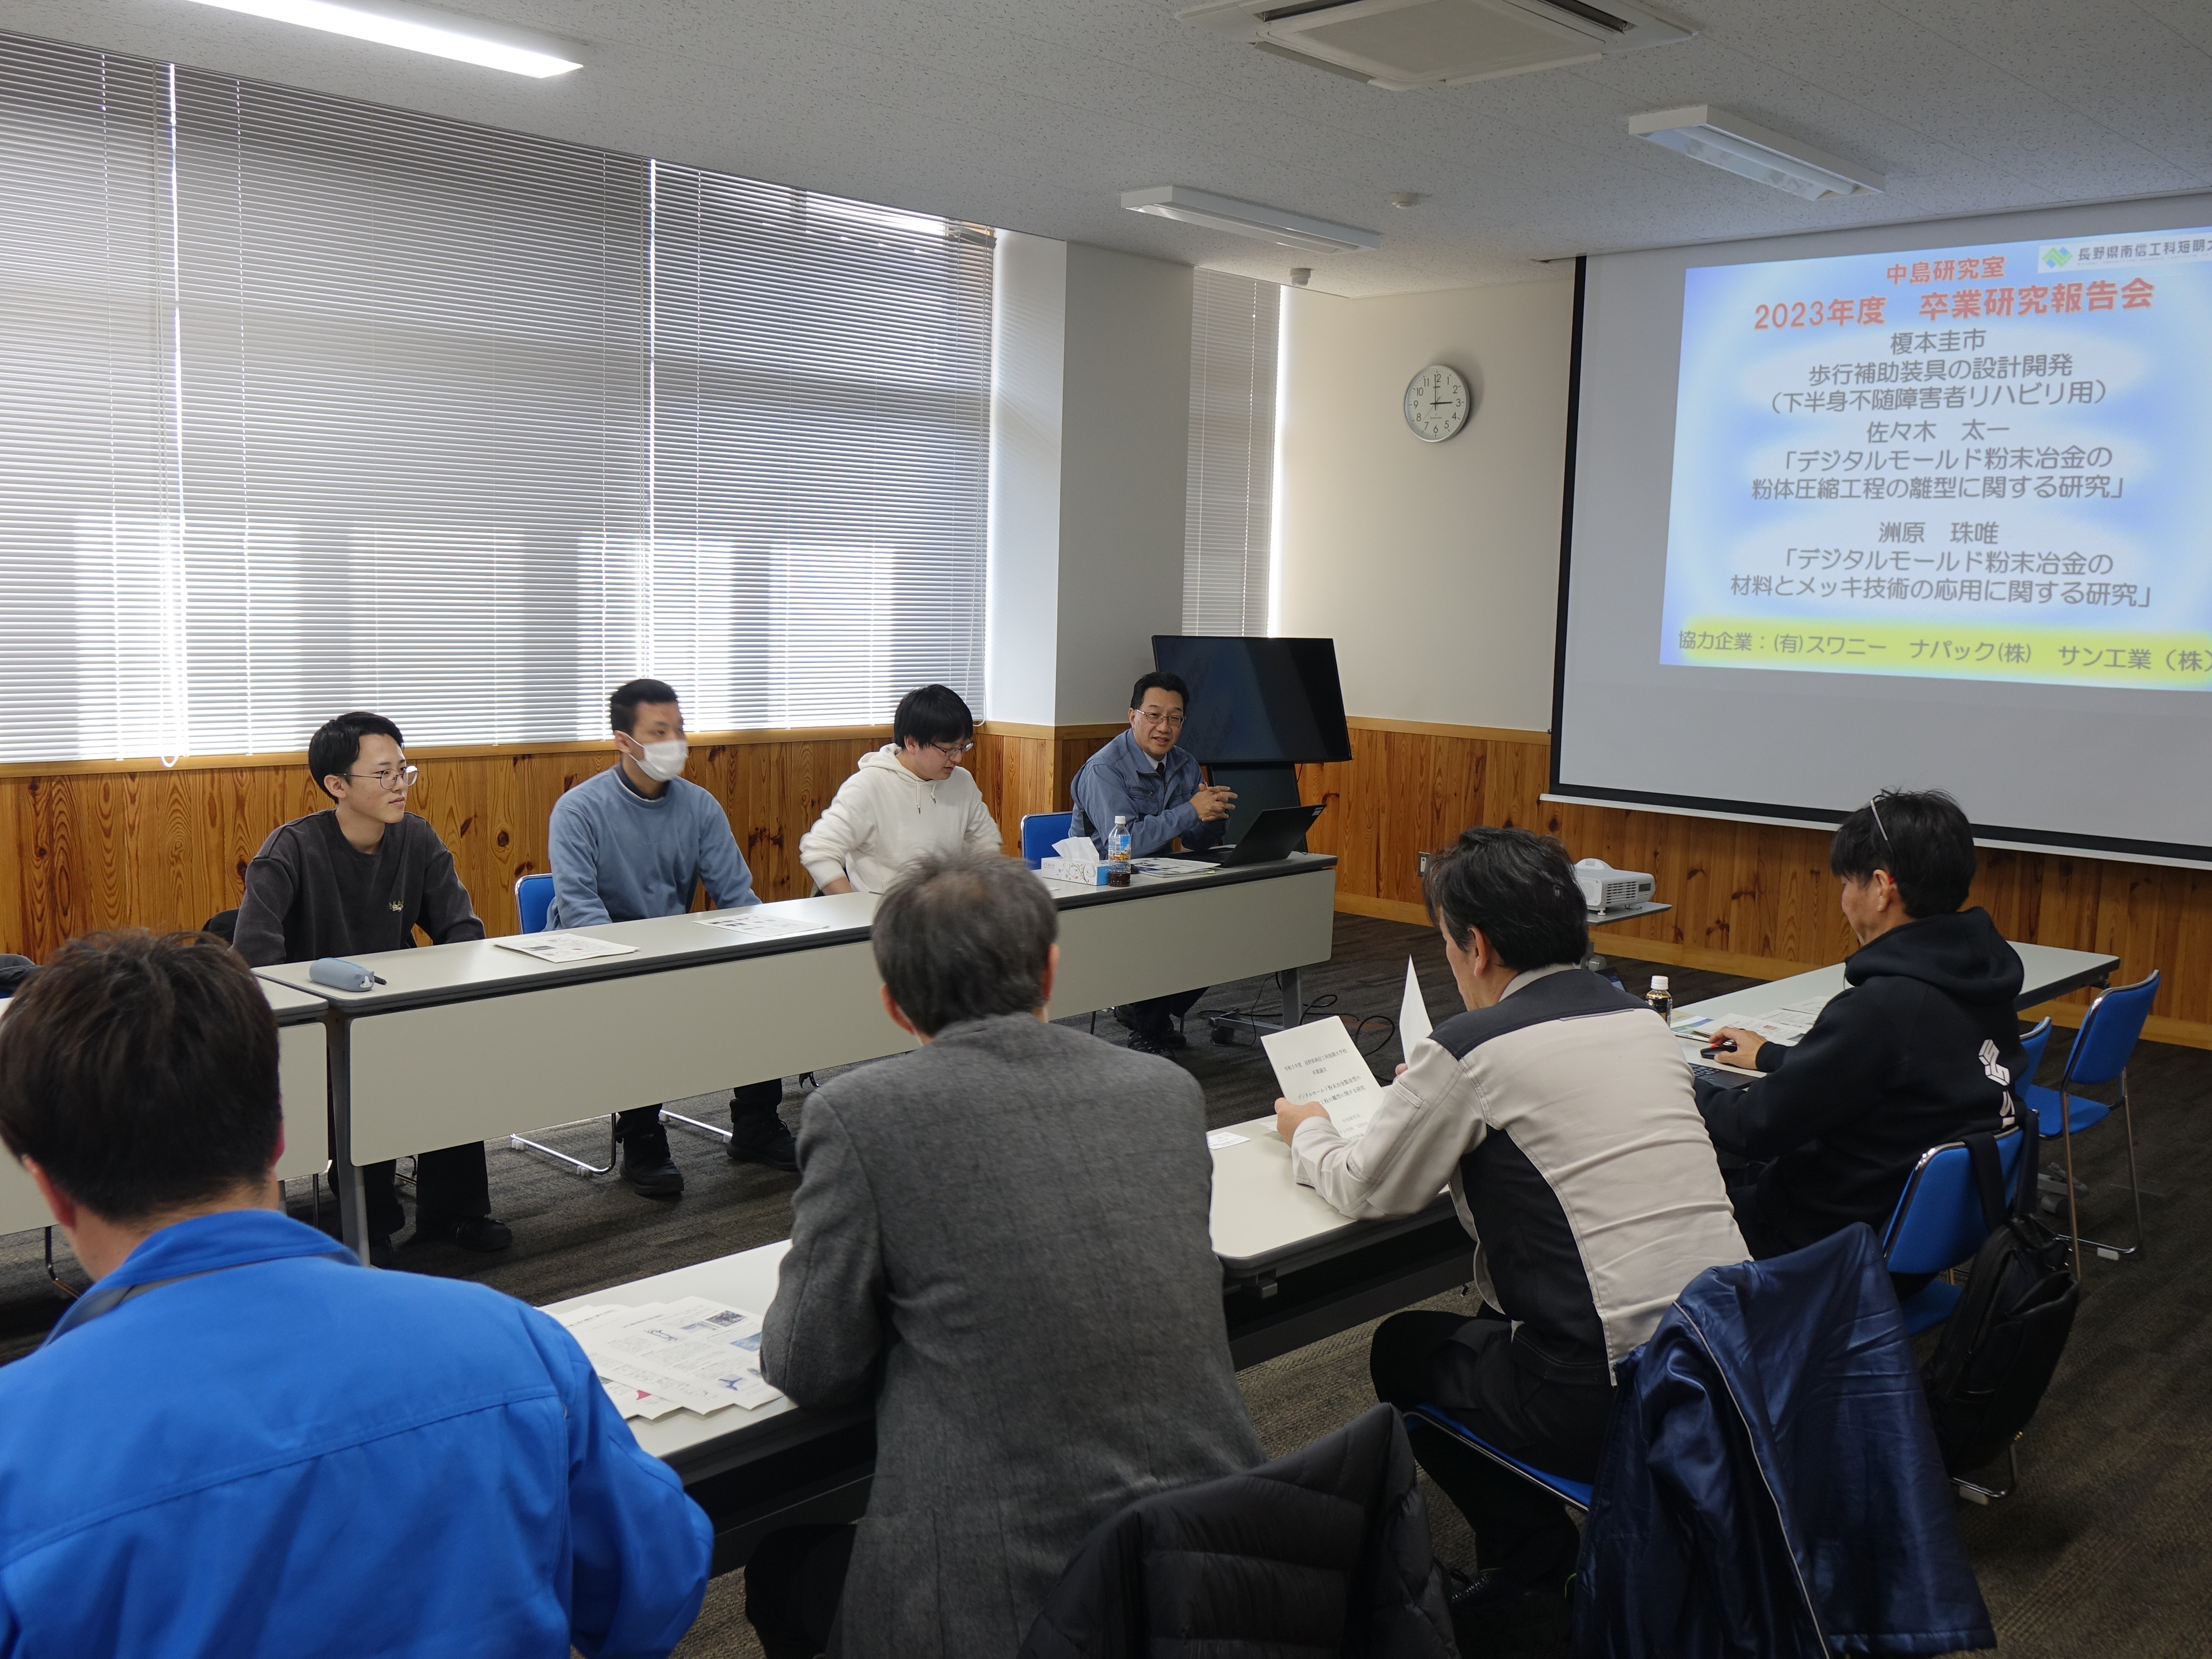 中島研究室の学生が卒業研究報告会を実施しました。